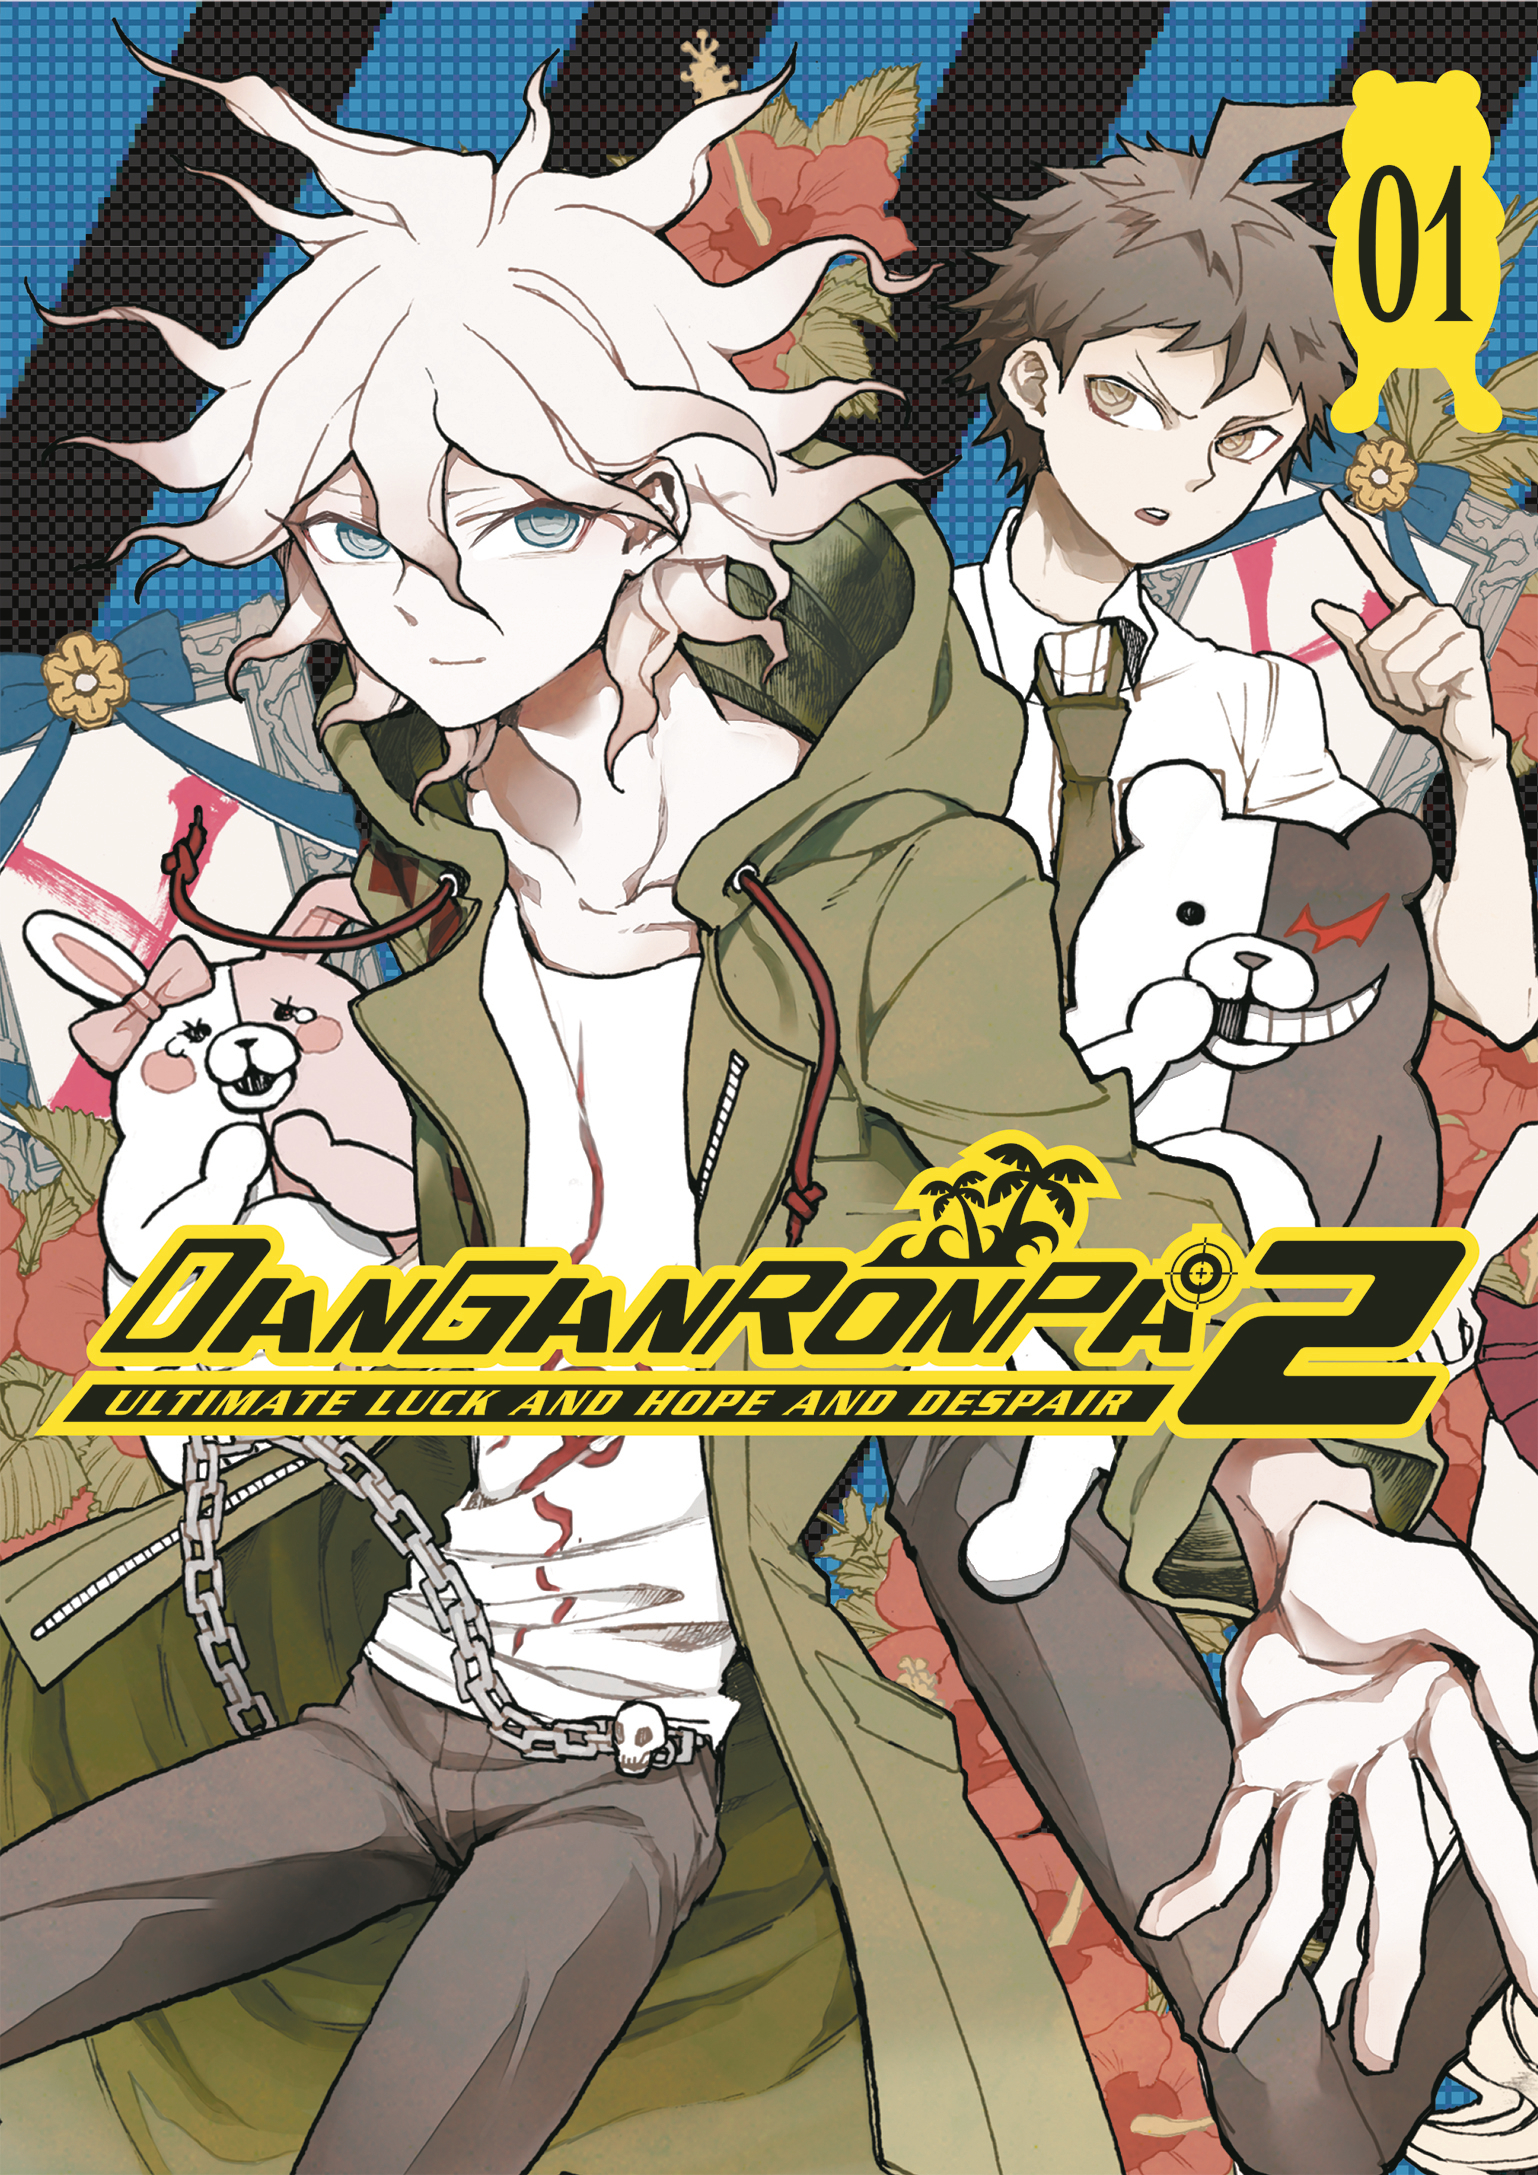 Danganronpa 2 Volume 1 Ultimate Luck Hope Despair Graphic Novel